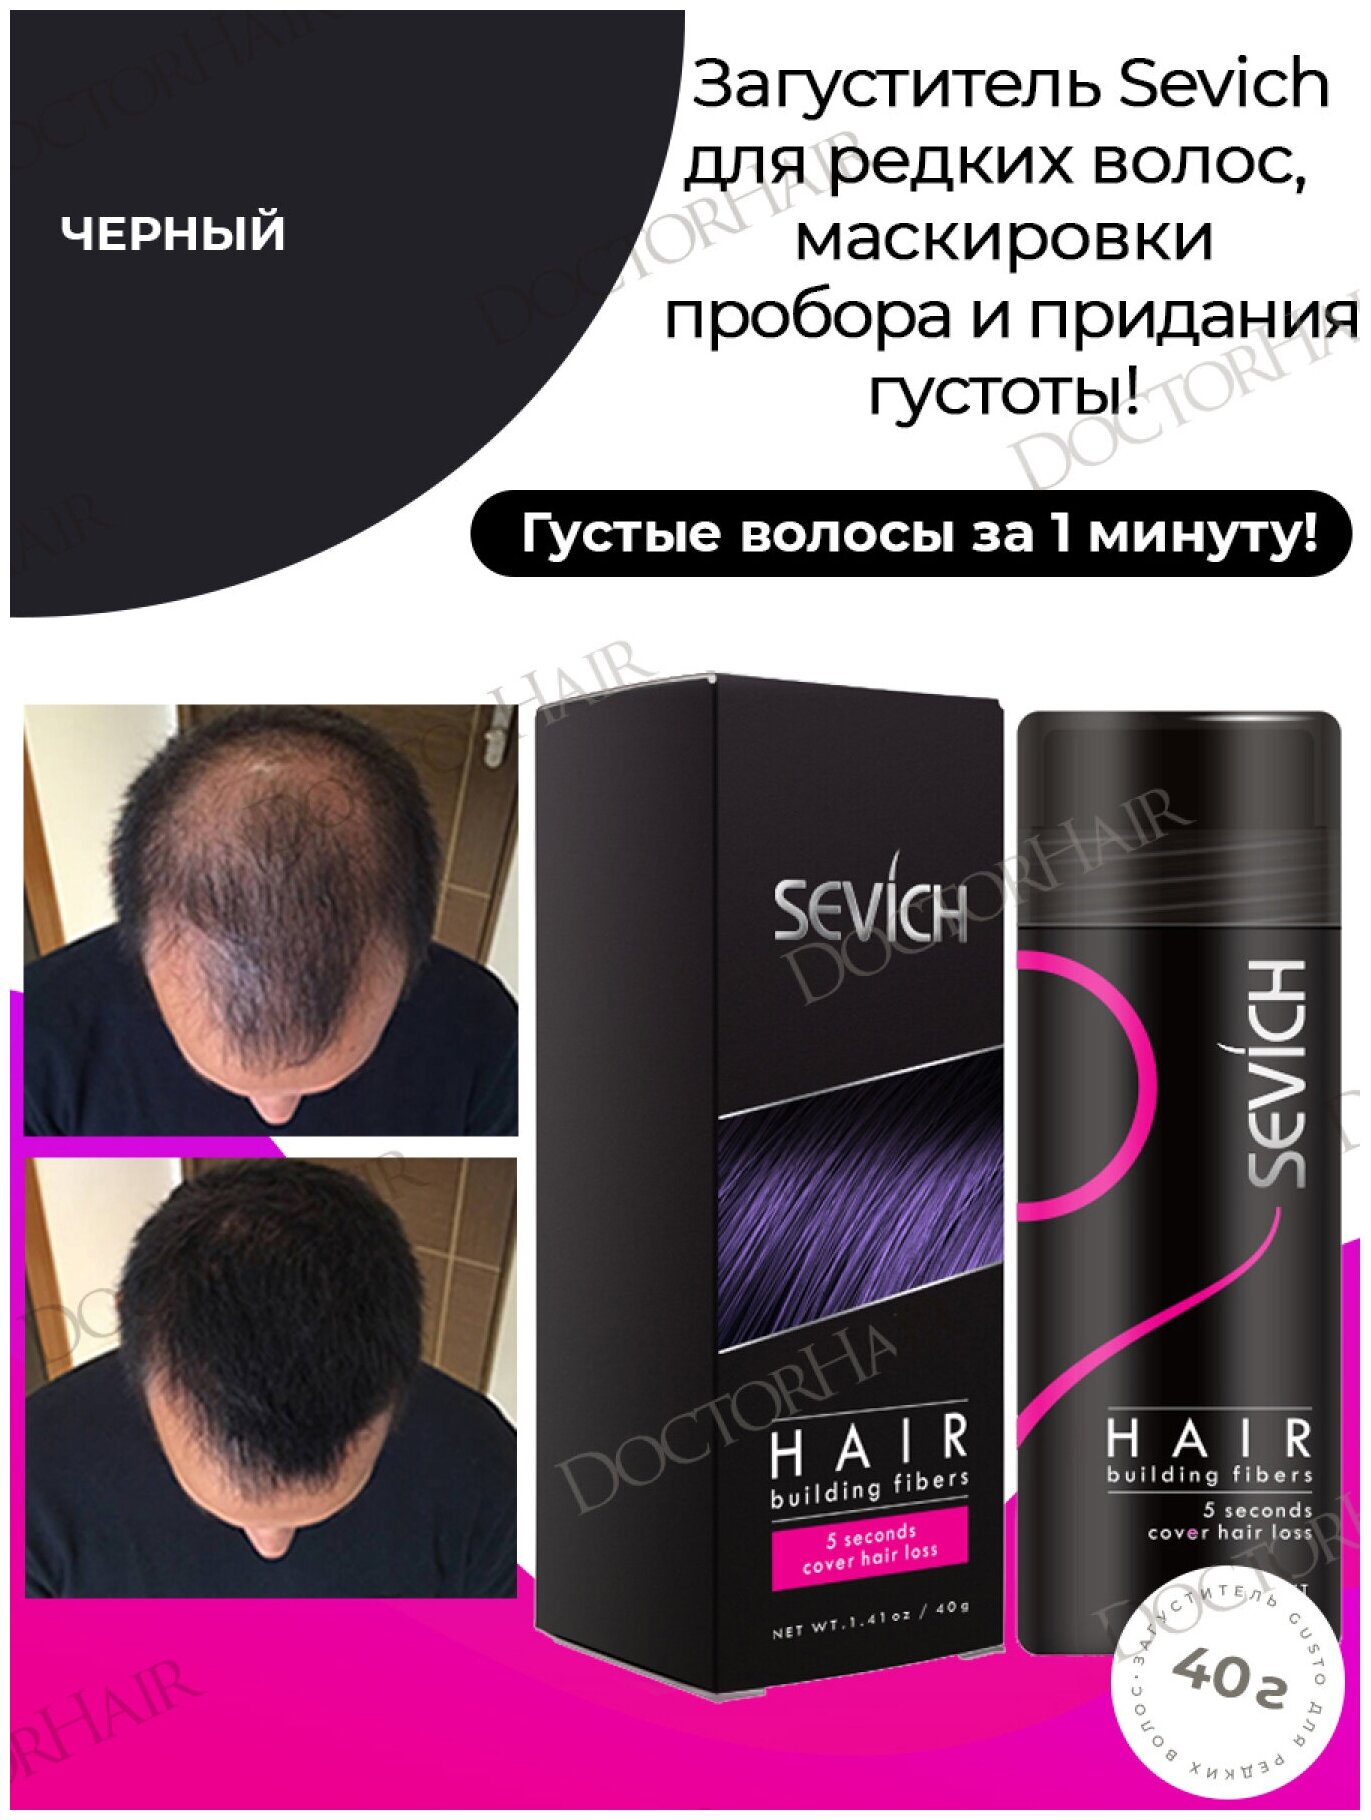 Sevich / Севич Средство загуститель для волос, сухая пудра камуфляж выпадения и седины, черный (black), 40 мл, 40 г